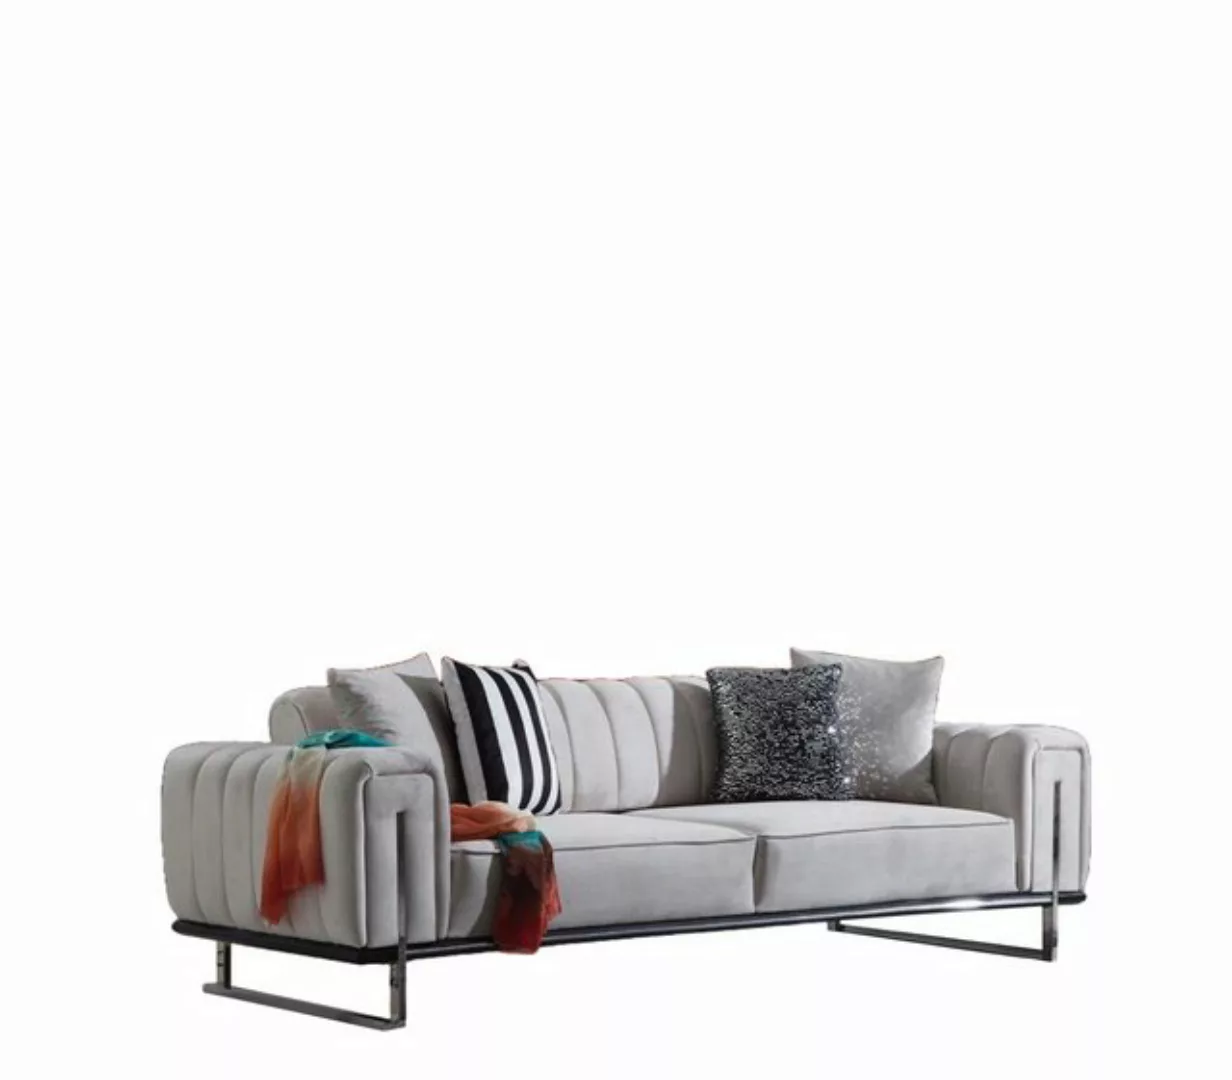 JVmoebel 3-Sitzer Wohnzimmer Sofa Couch Dreisitzer Modern Polstersofas Neu günstig online kaufen